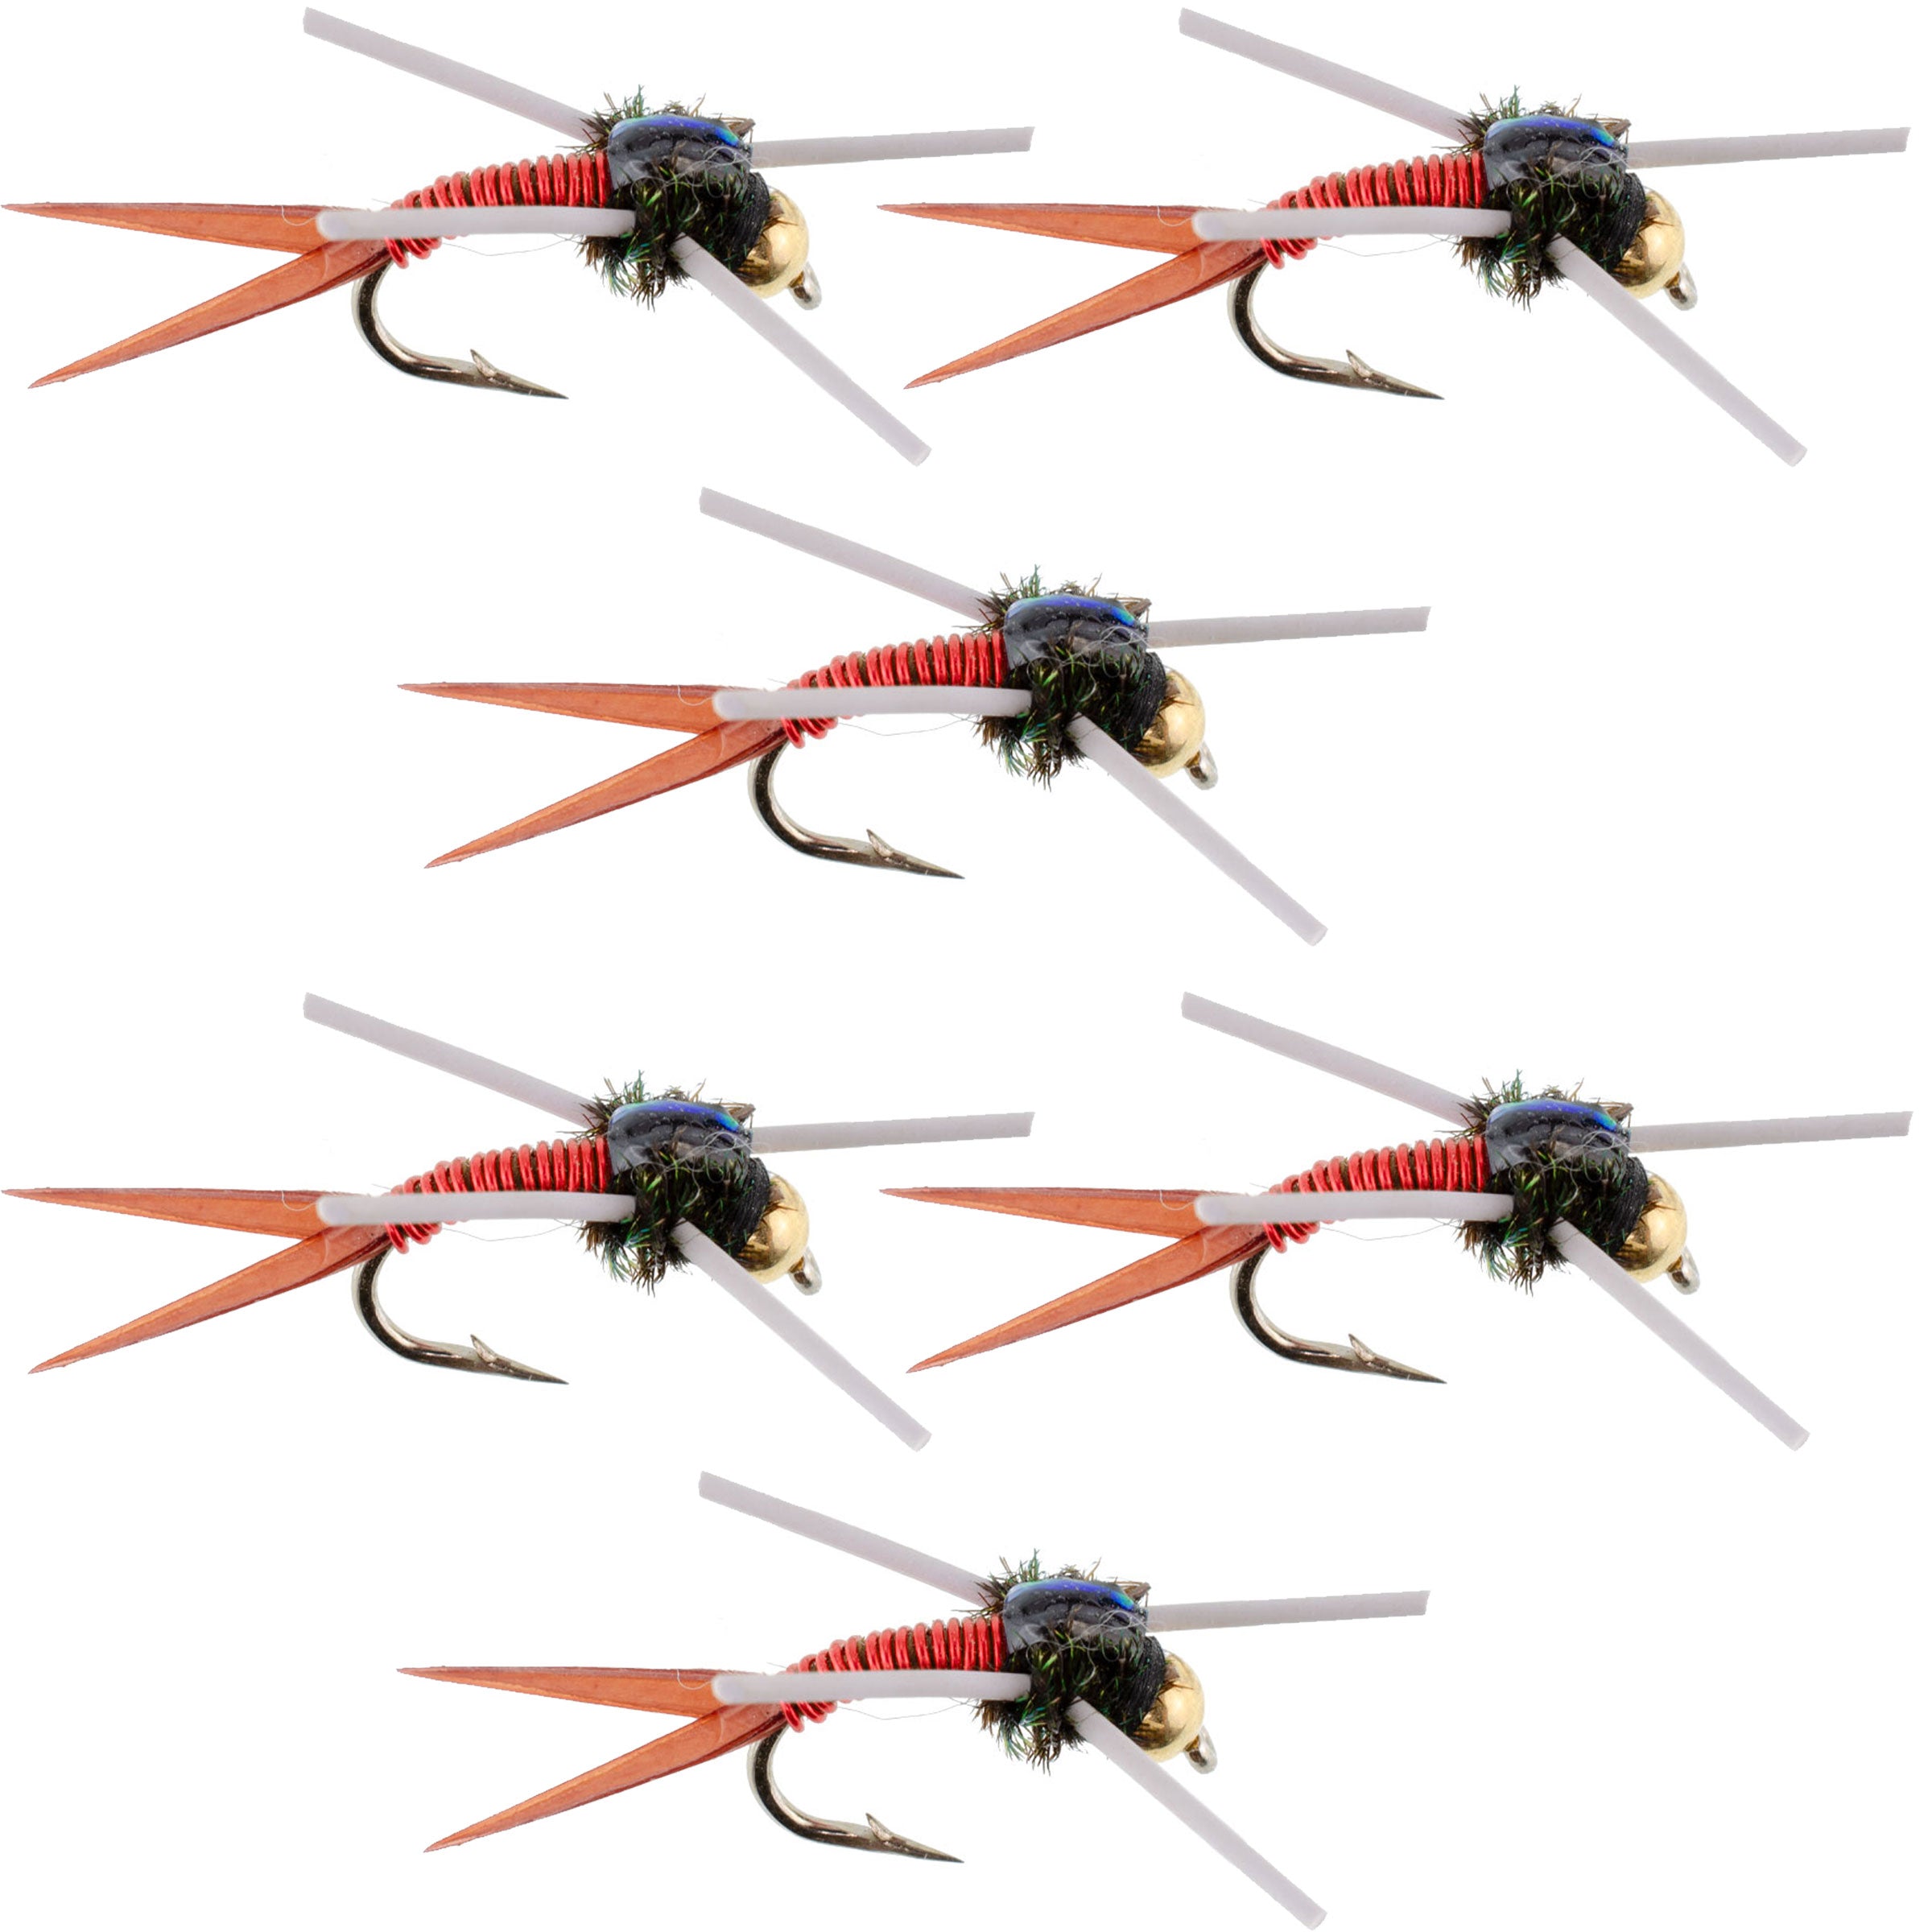 Tungsten Bead Head Rubber Legs Red Copper John Nymph Fly Fishing Flies - Set of 6 Flies Hook Size 16